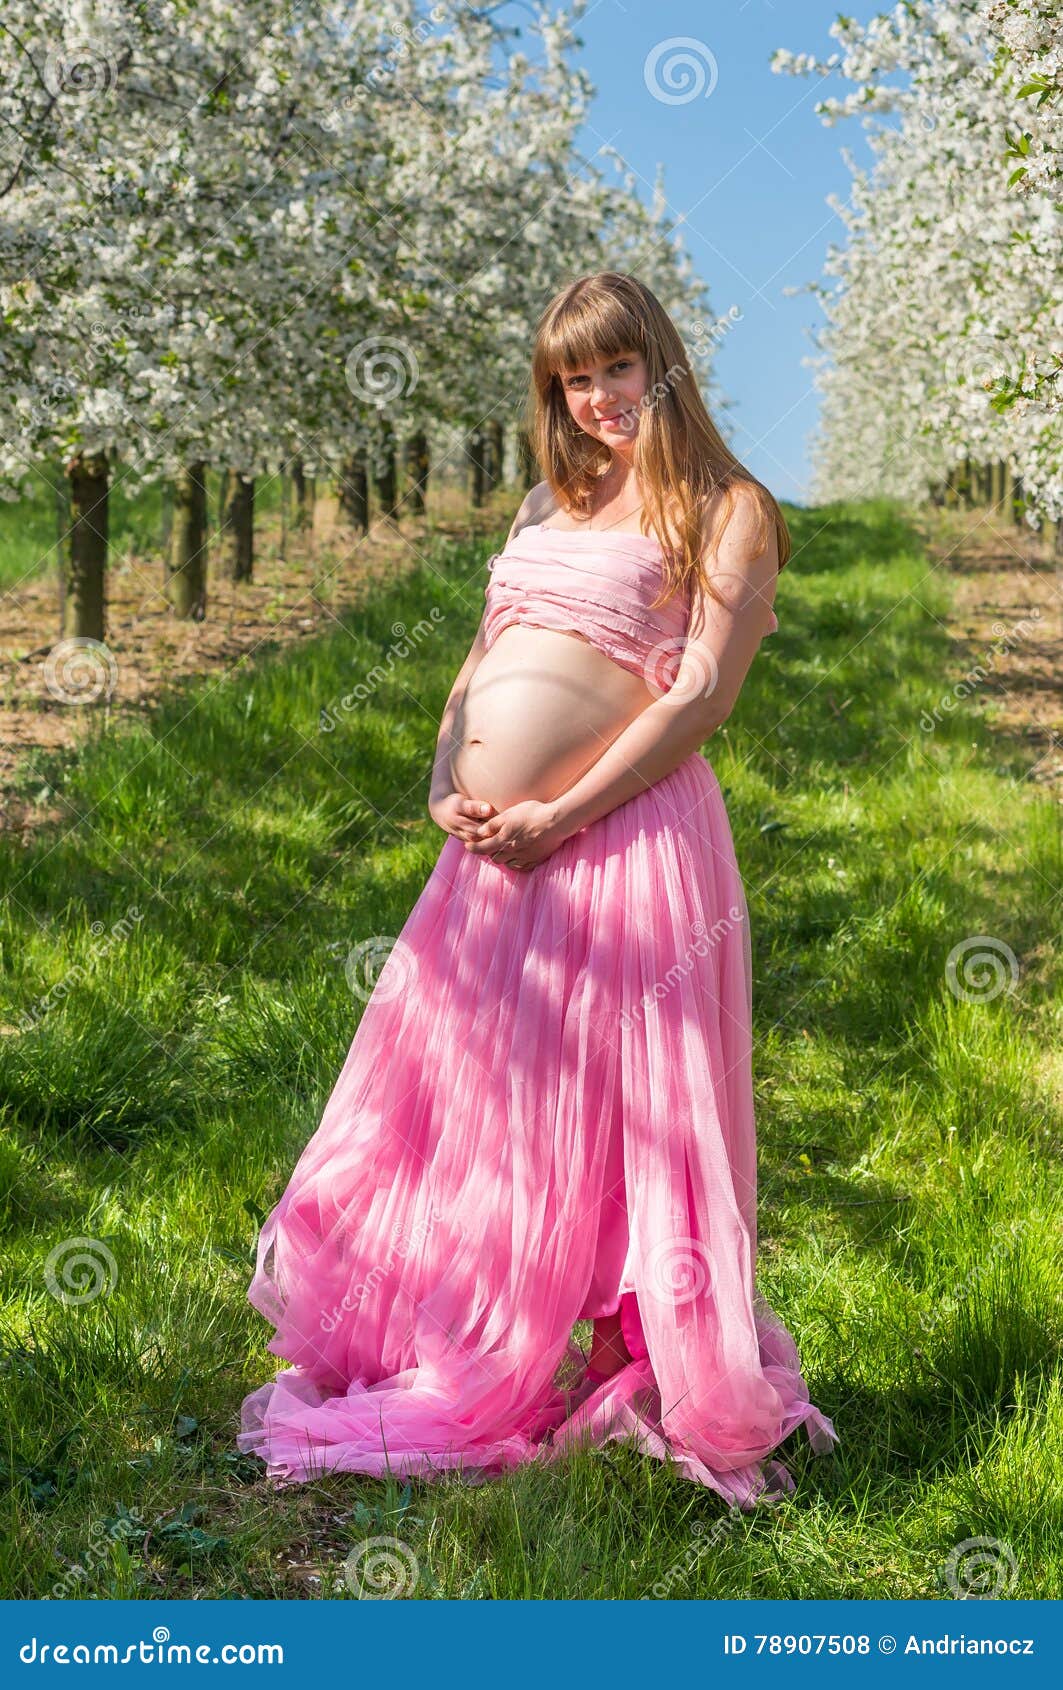 беременные малолетки эротика фото 29